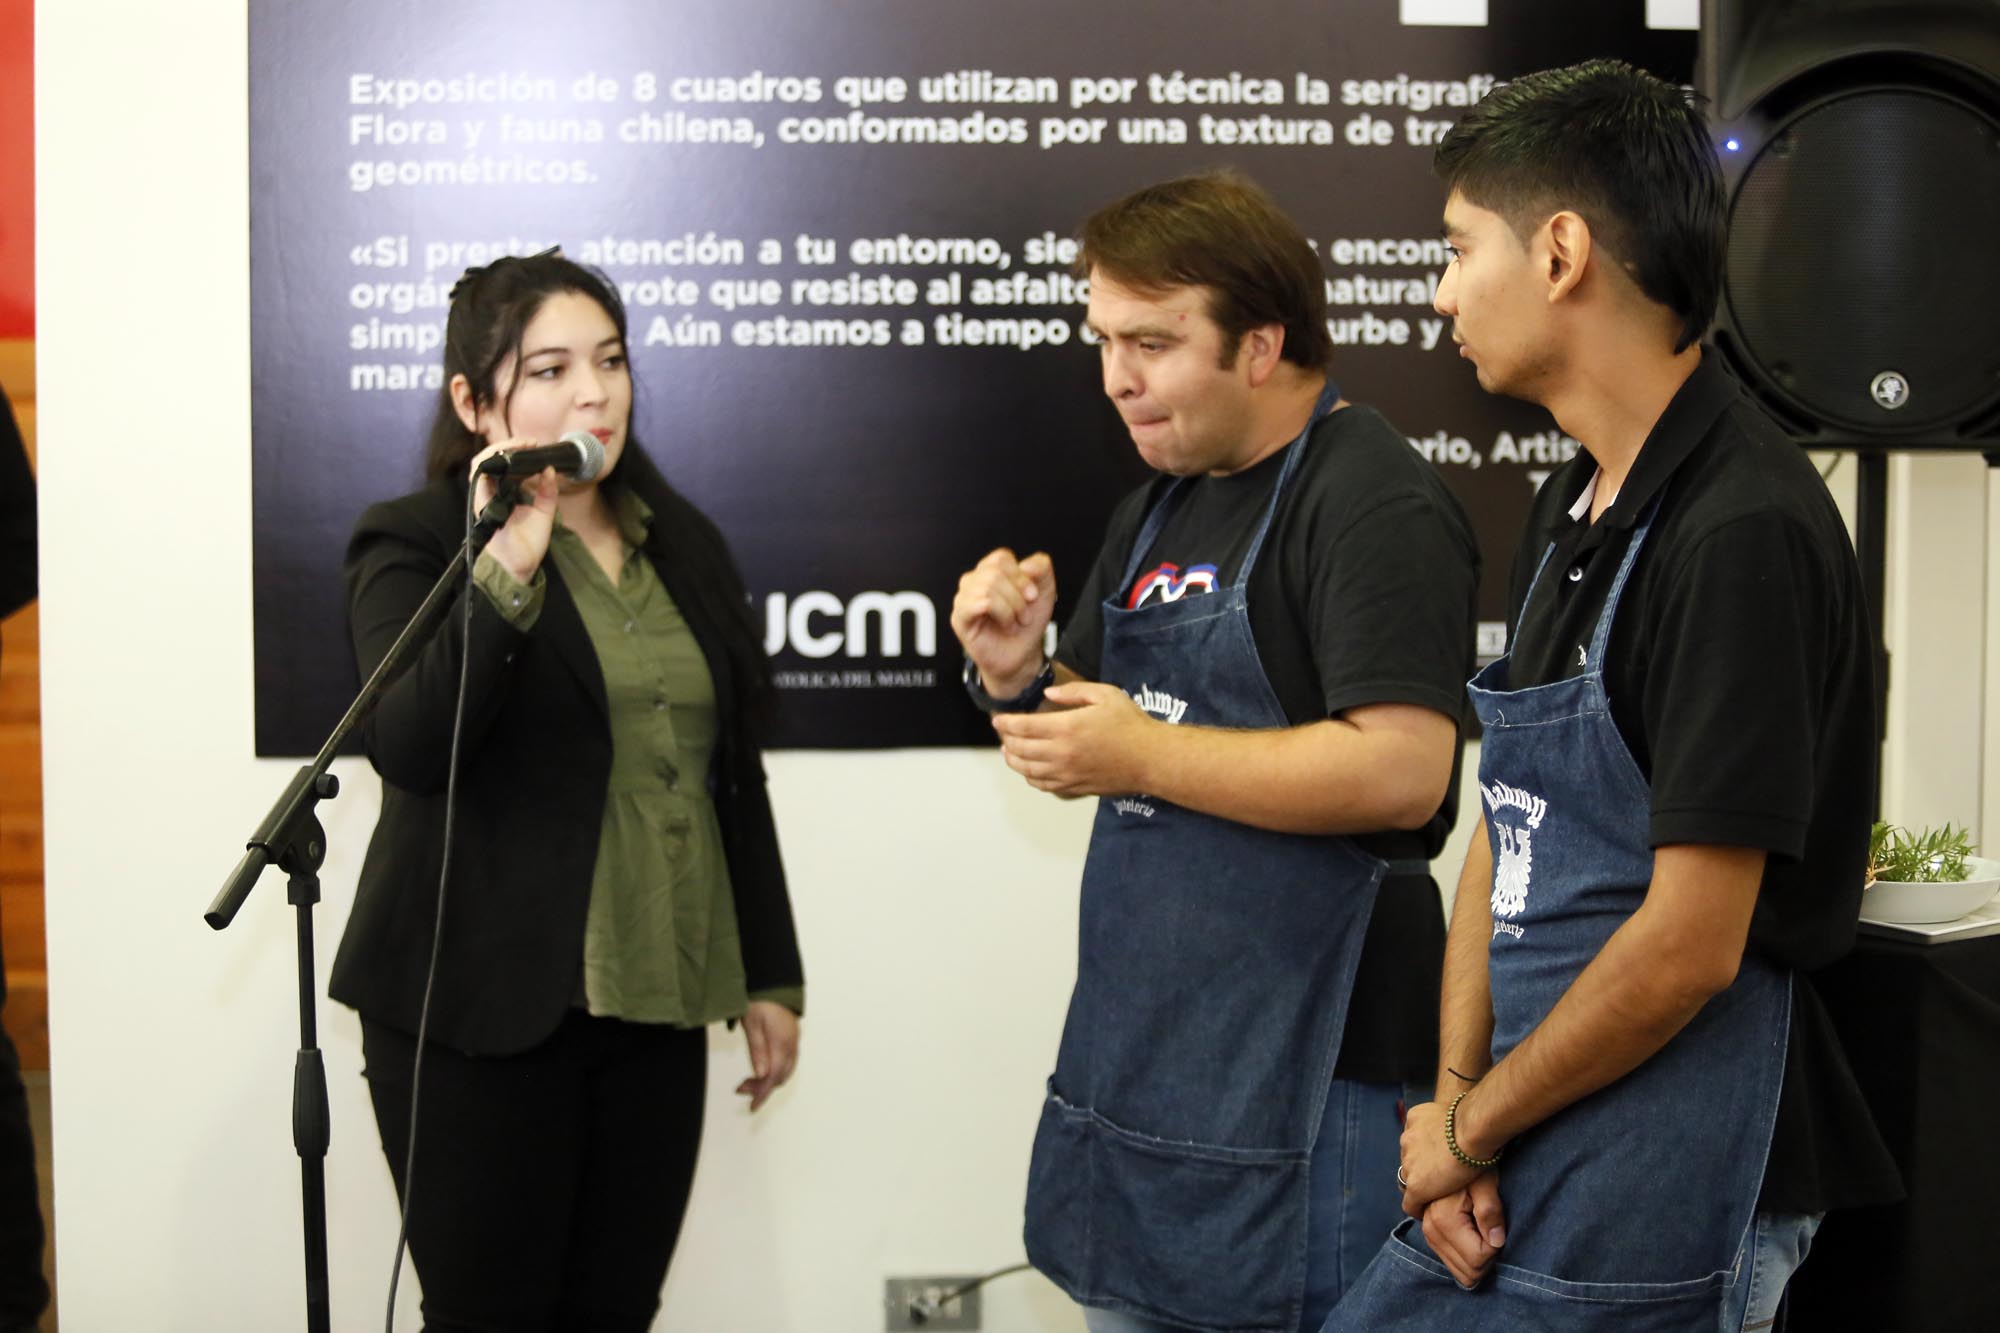 UCM inauguró cafetería inclusiva en su centro de extensión en Talca